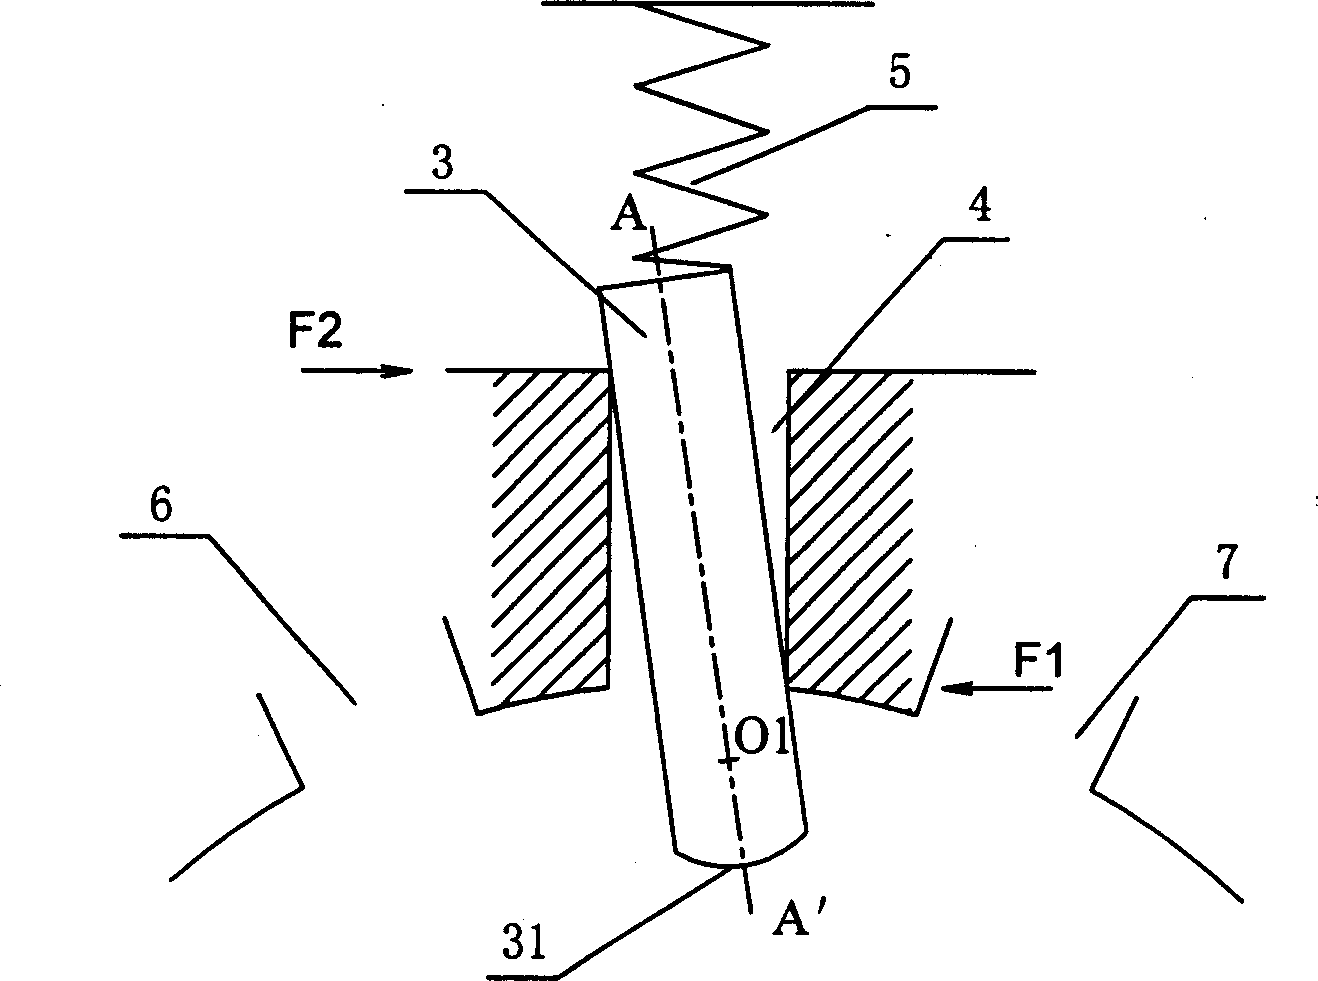 Slip-sheet for rotary compressor